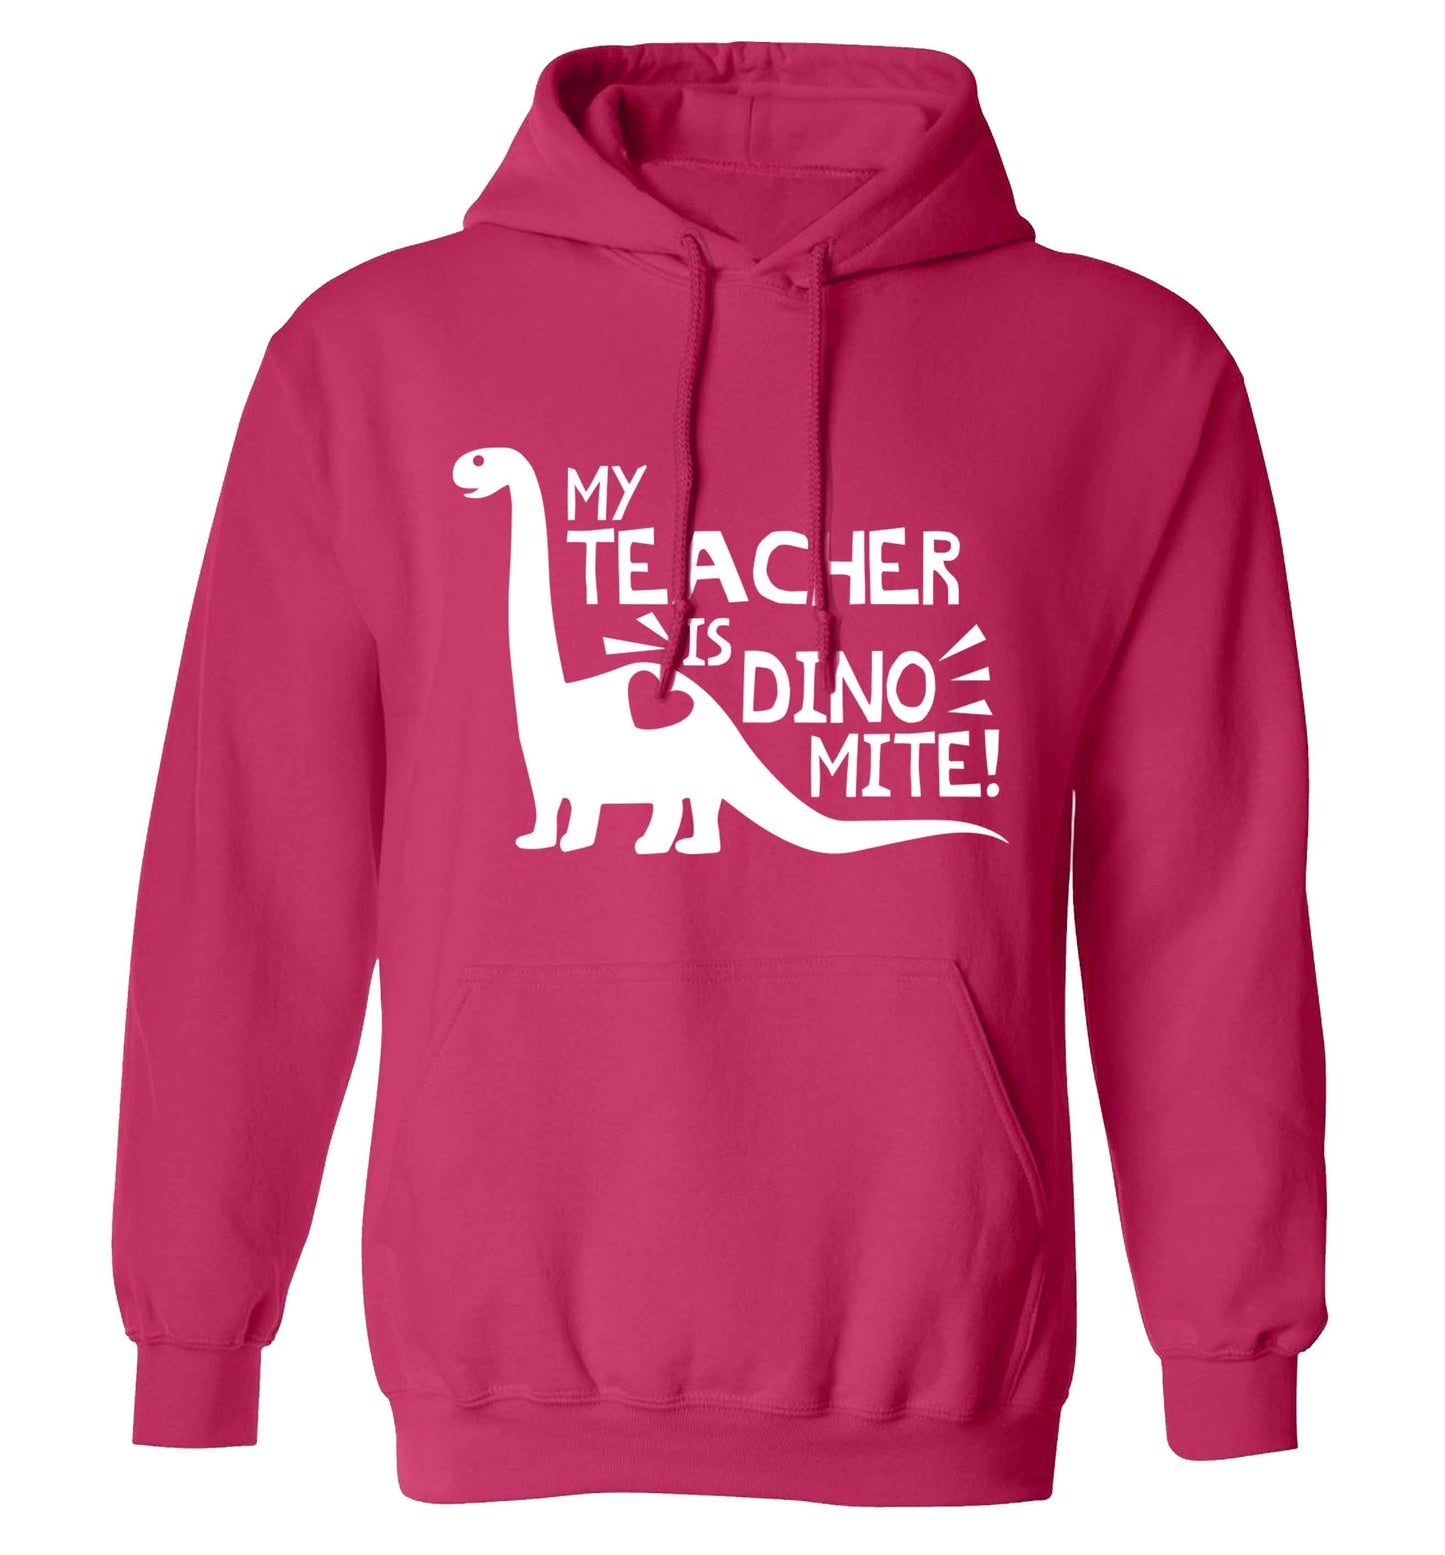 My teacher is dinomite! adults unisex pink hoodie 2XL